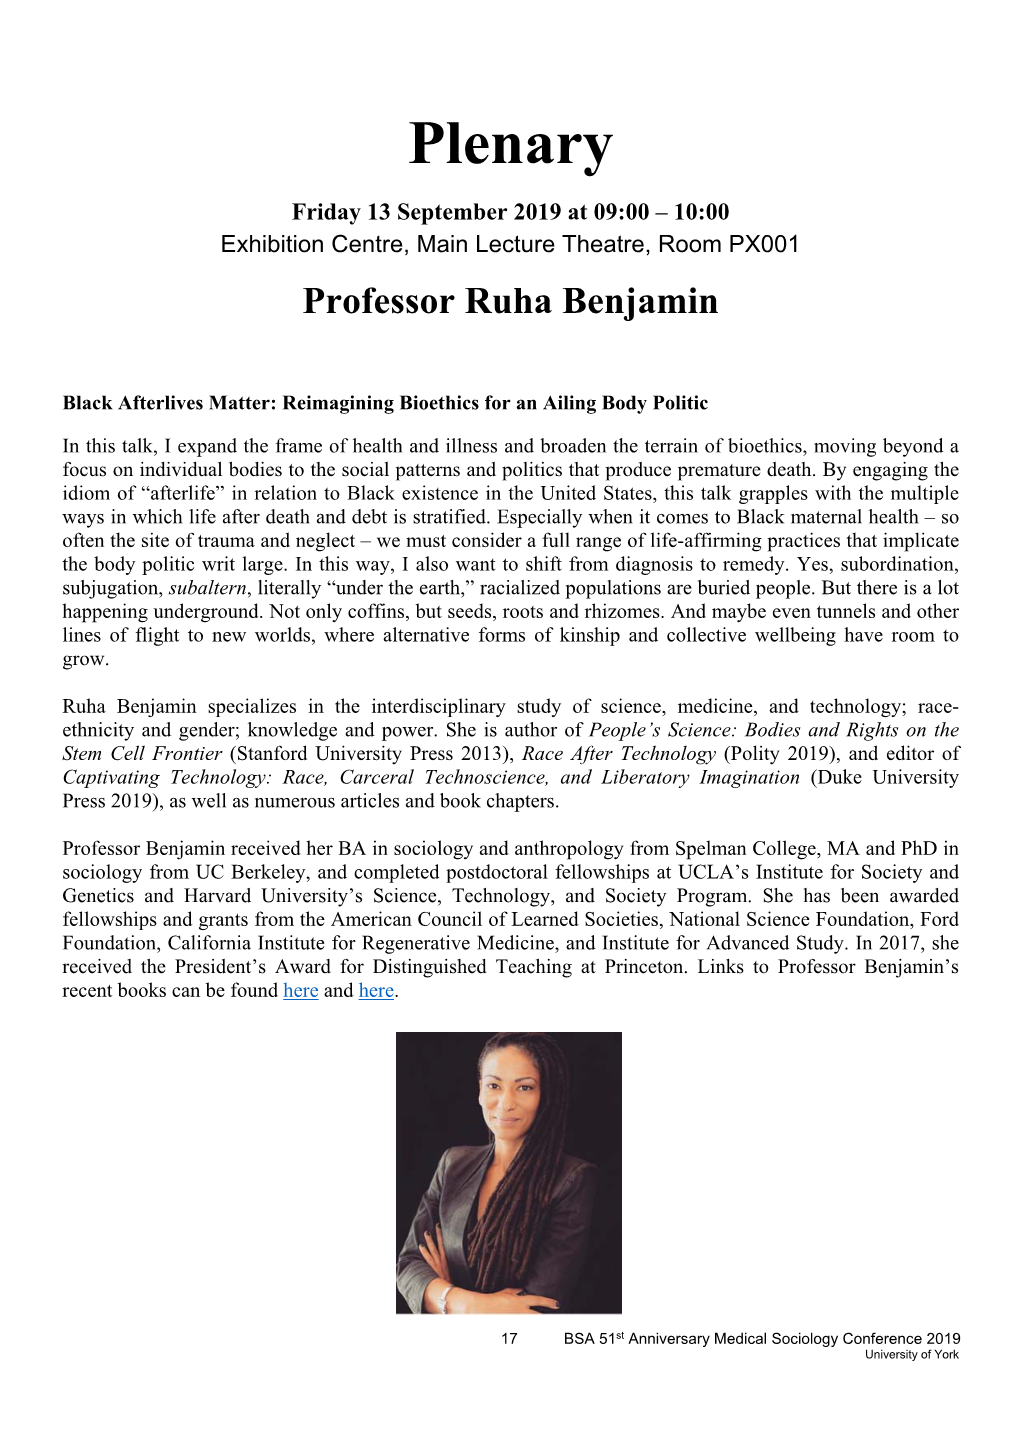 Professor Ruha Benjamin